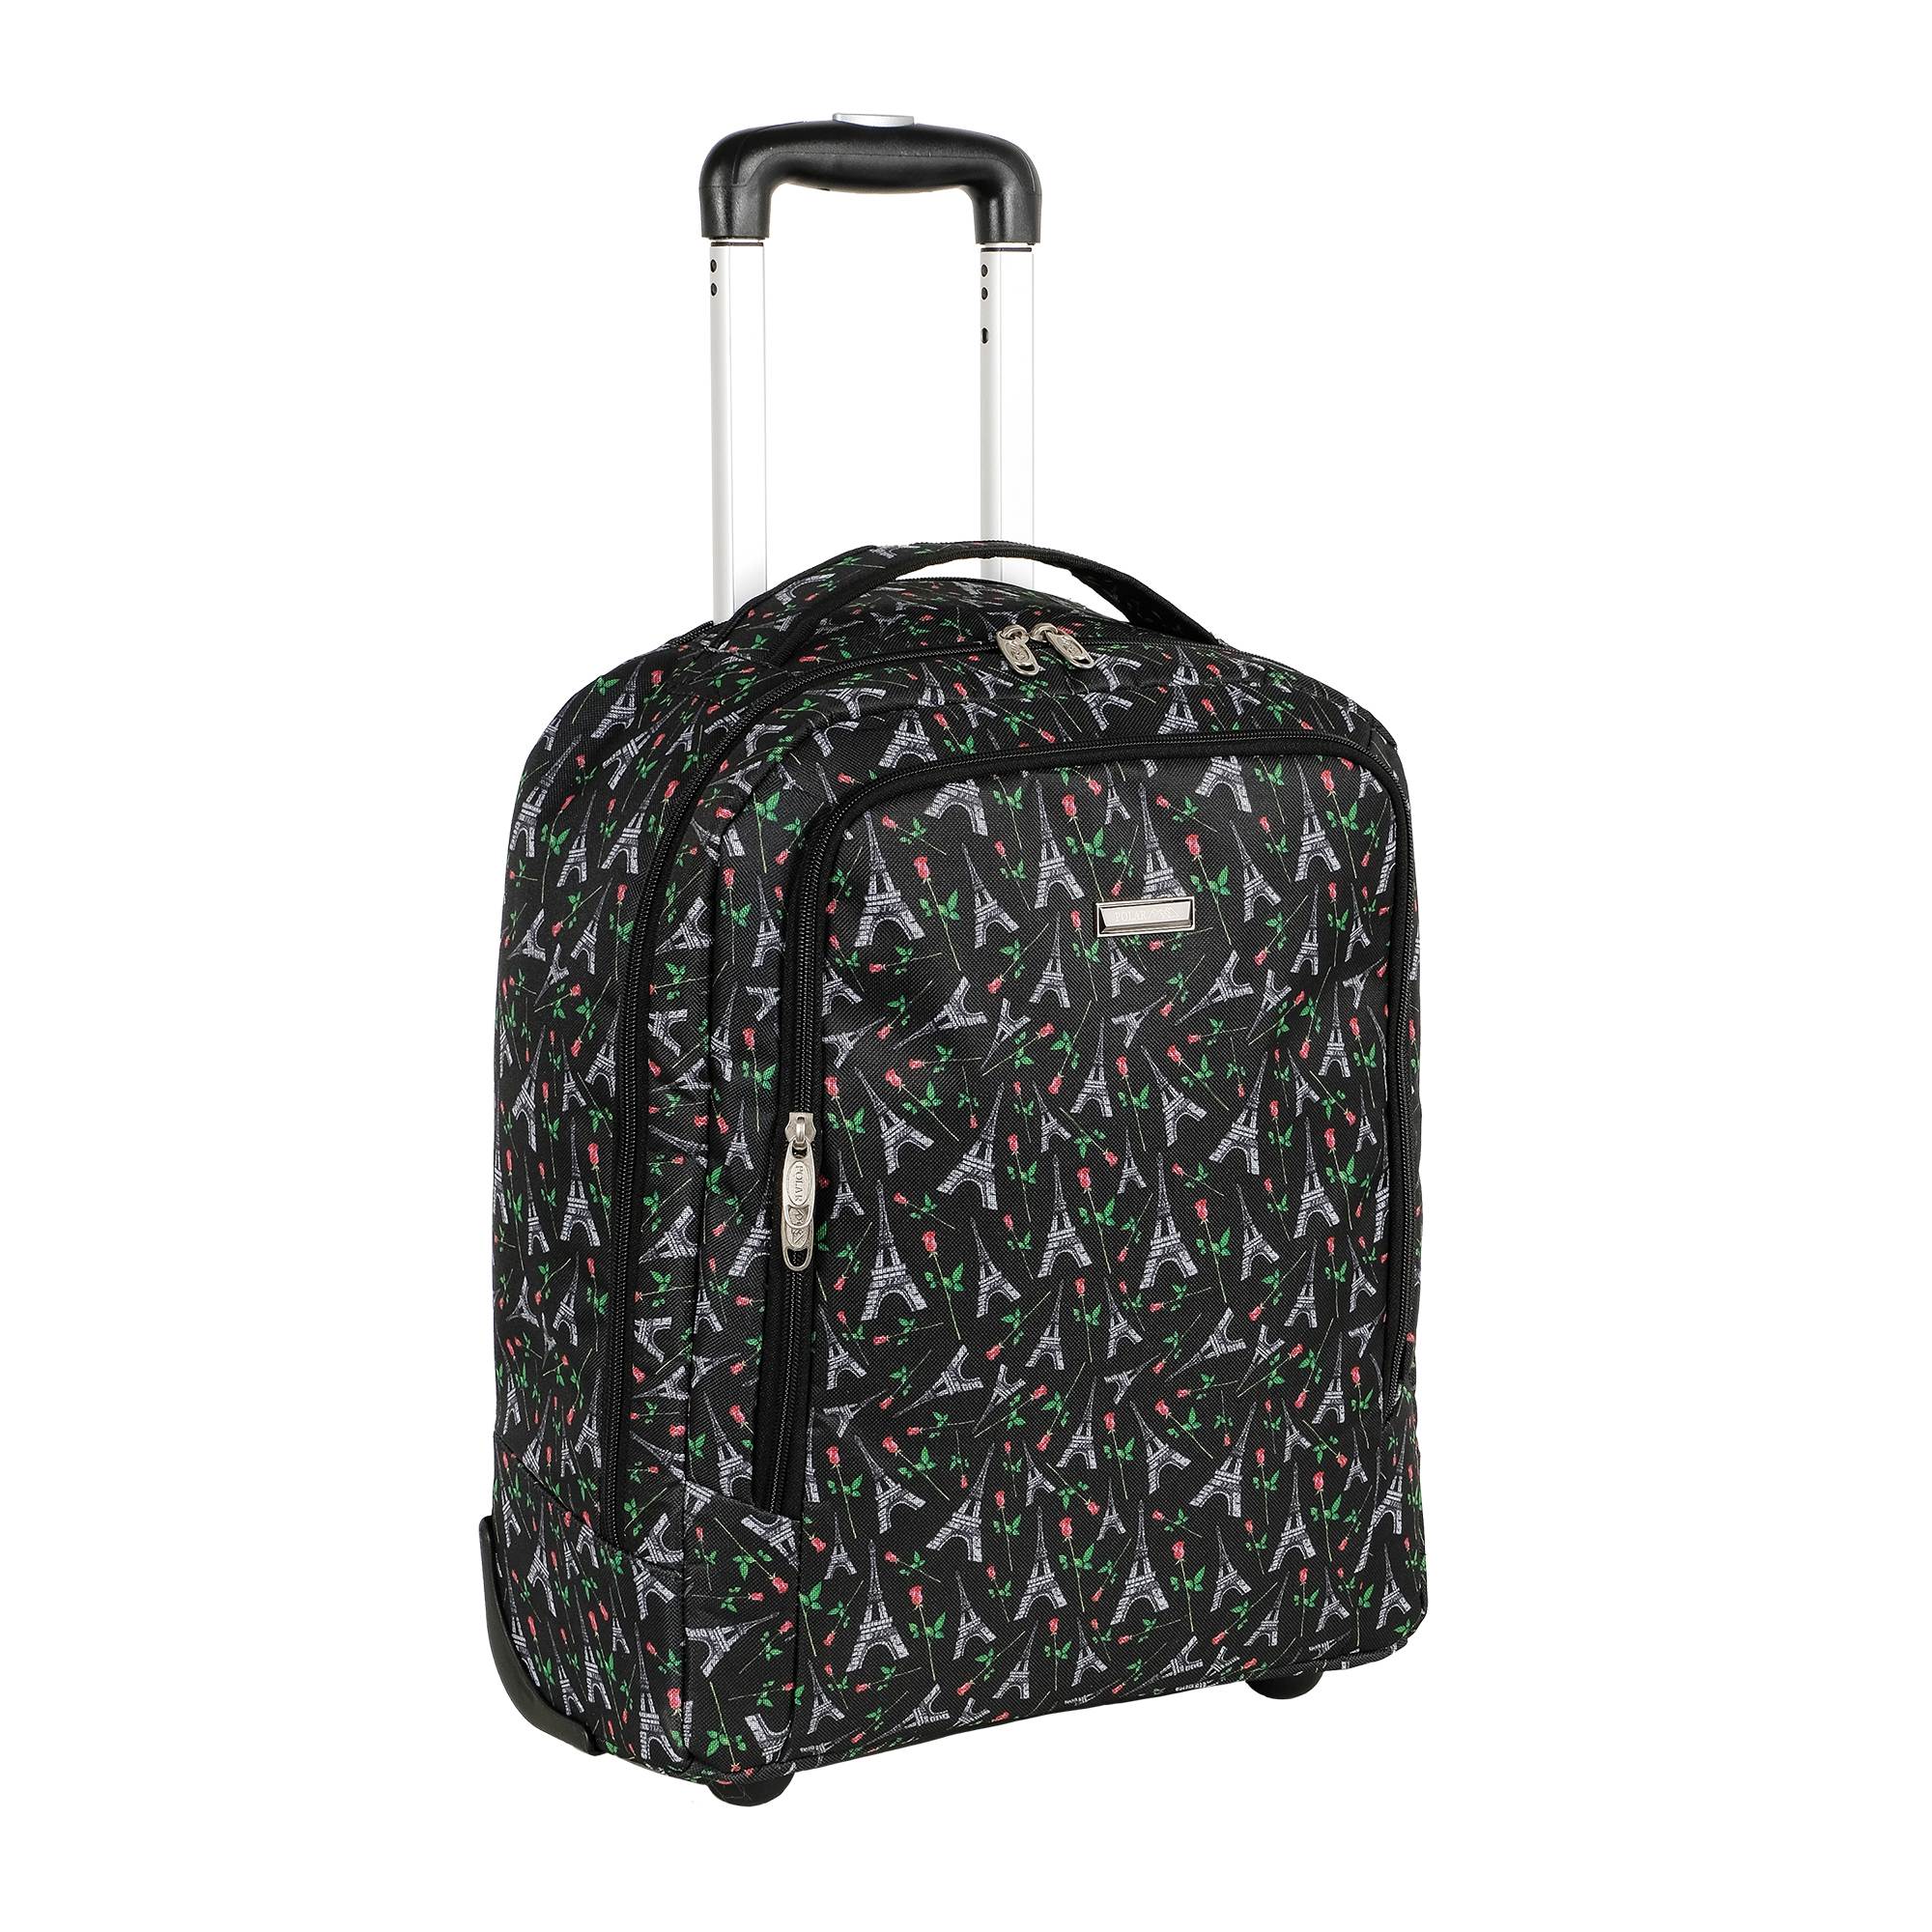 

Дорожная сумка женская Polar П7121 черная/зеленая, 48x36x17 см, Черный, П7121